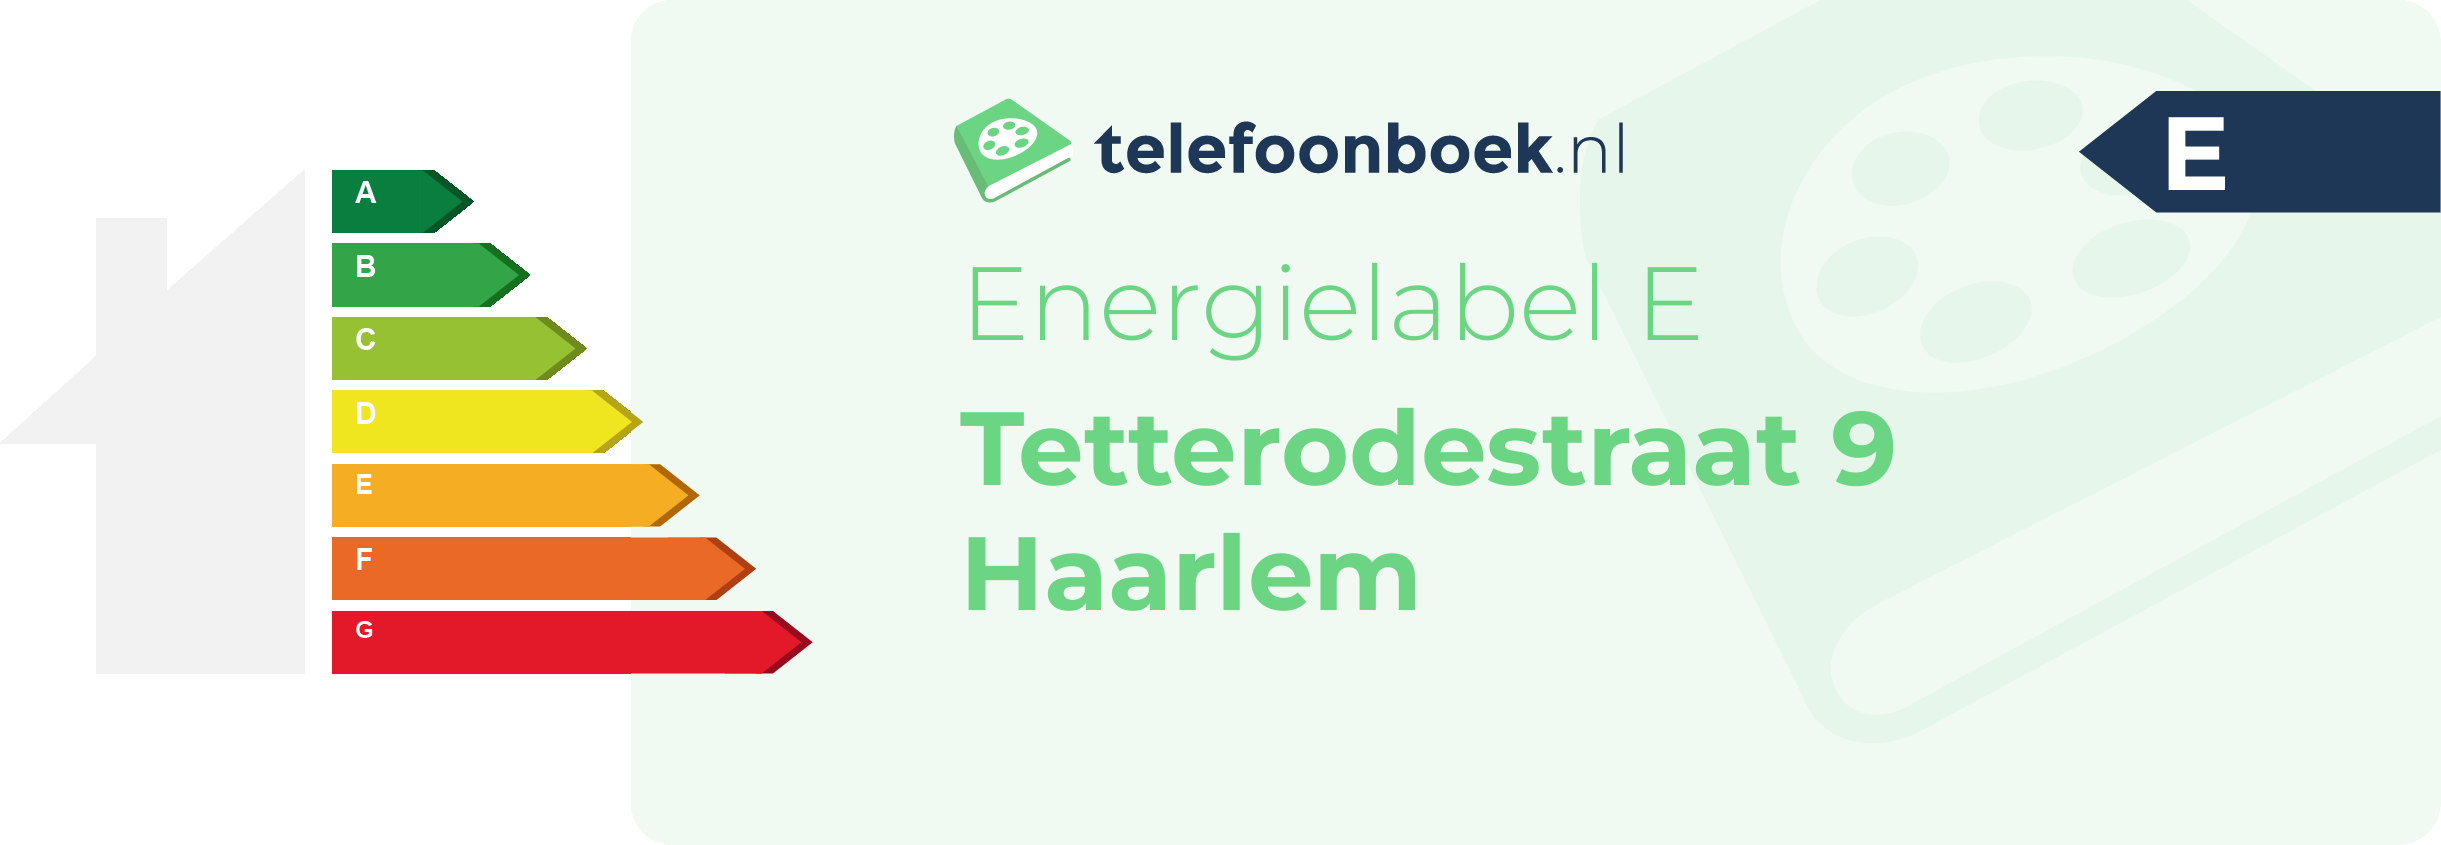 Energielabel Tetterodestraat 9 Haarlem